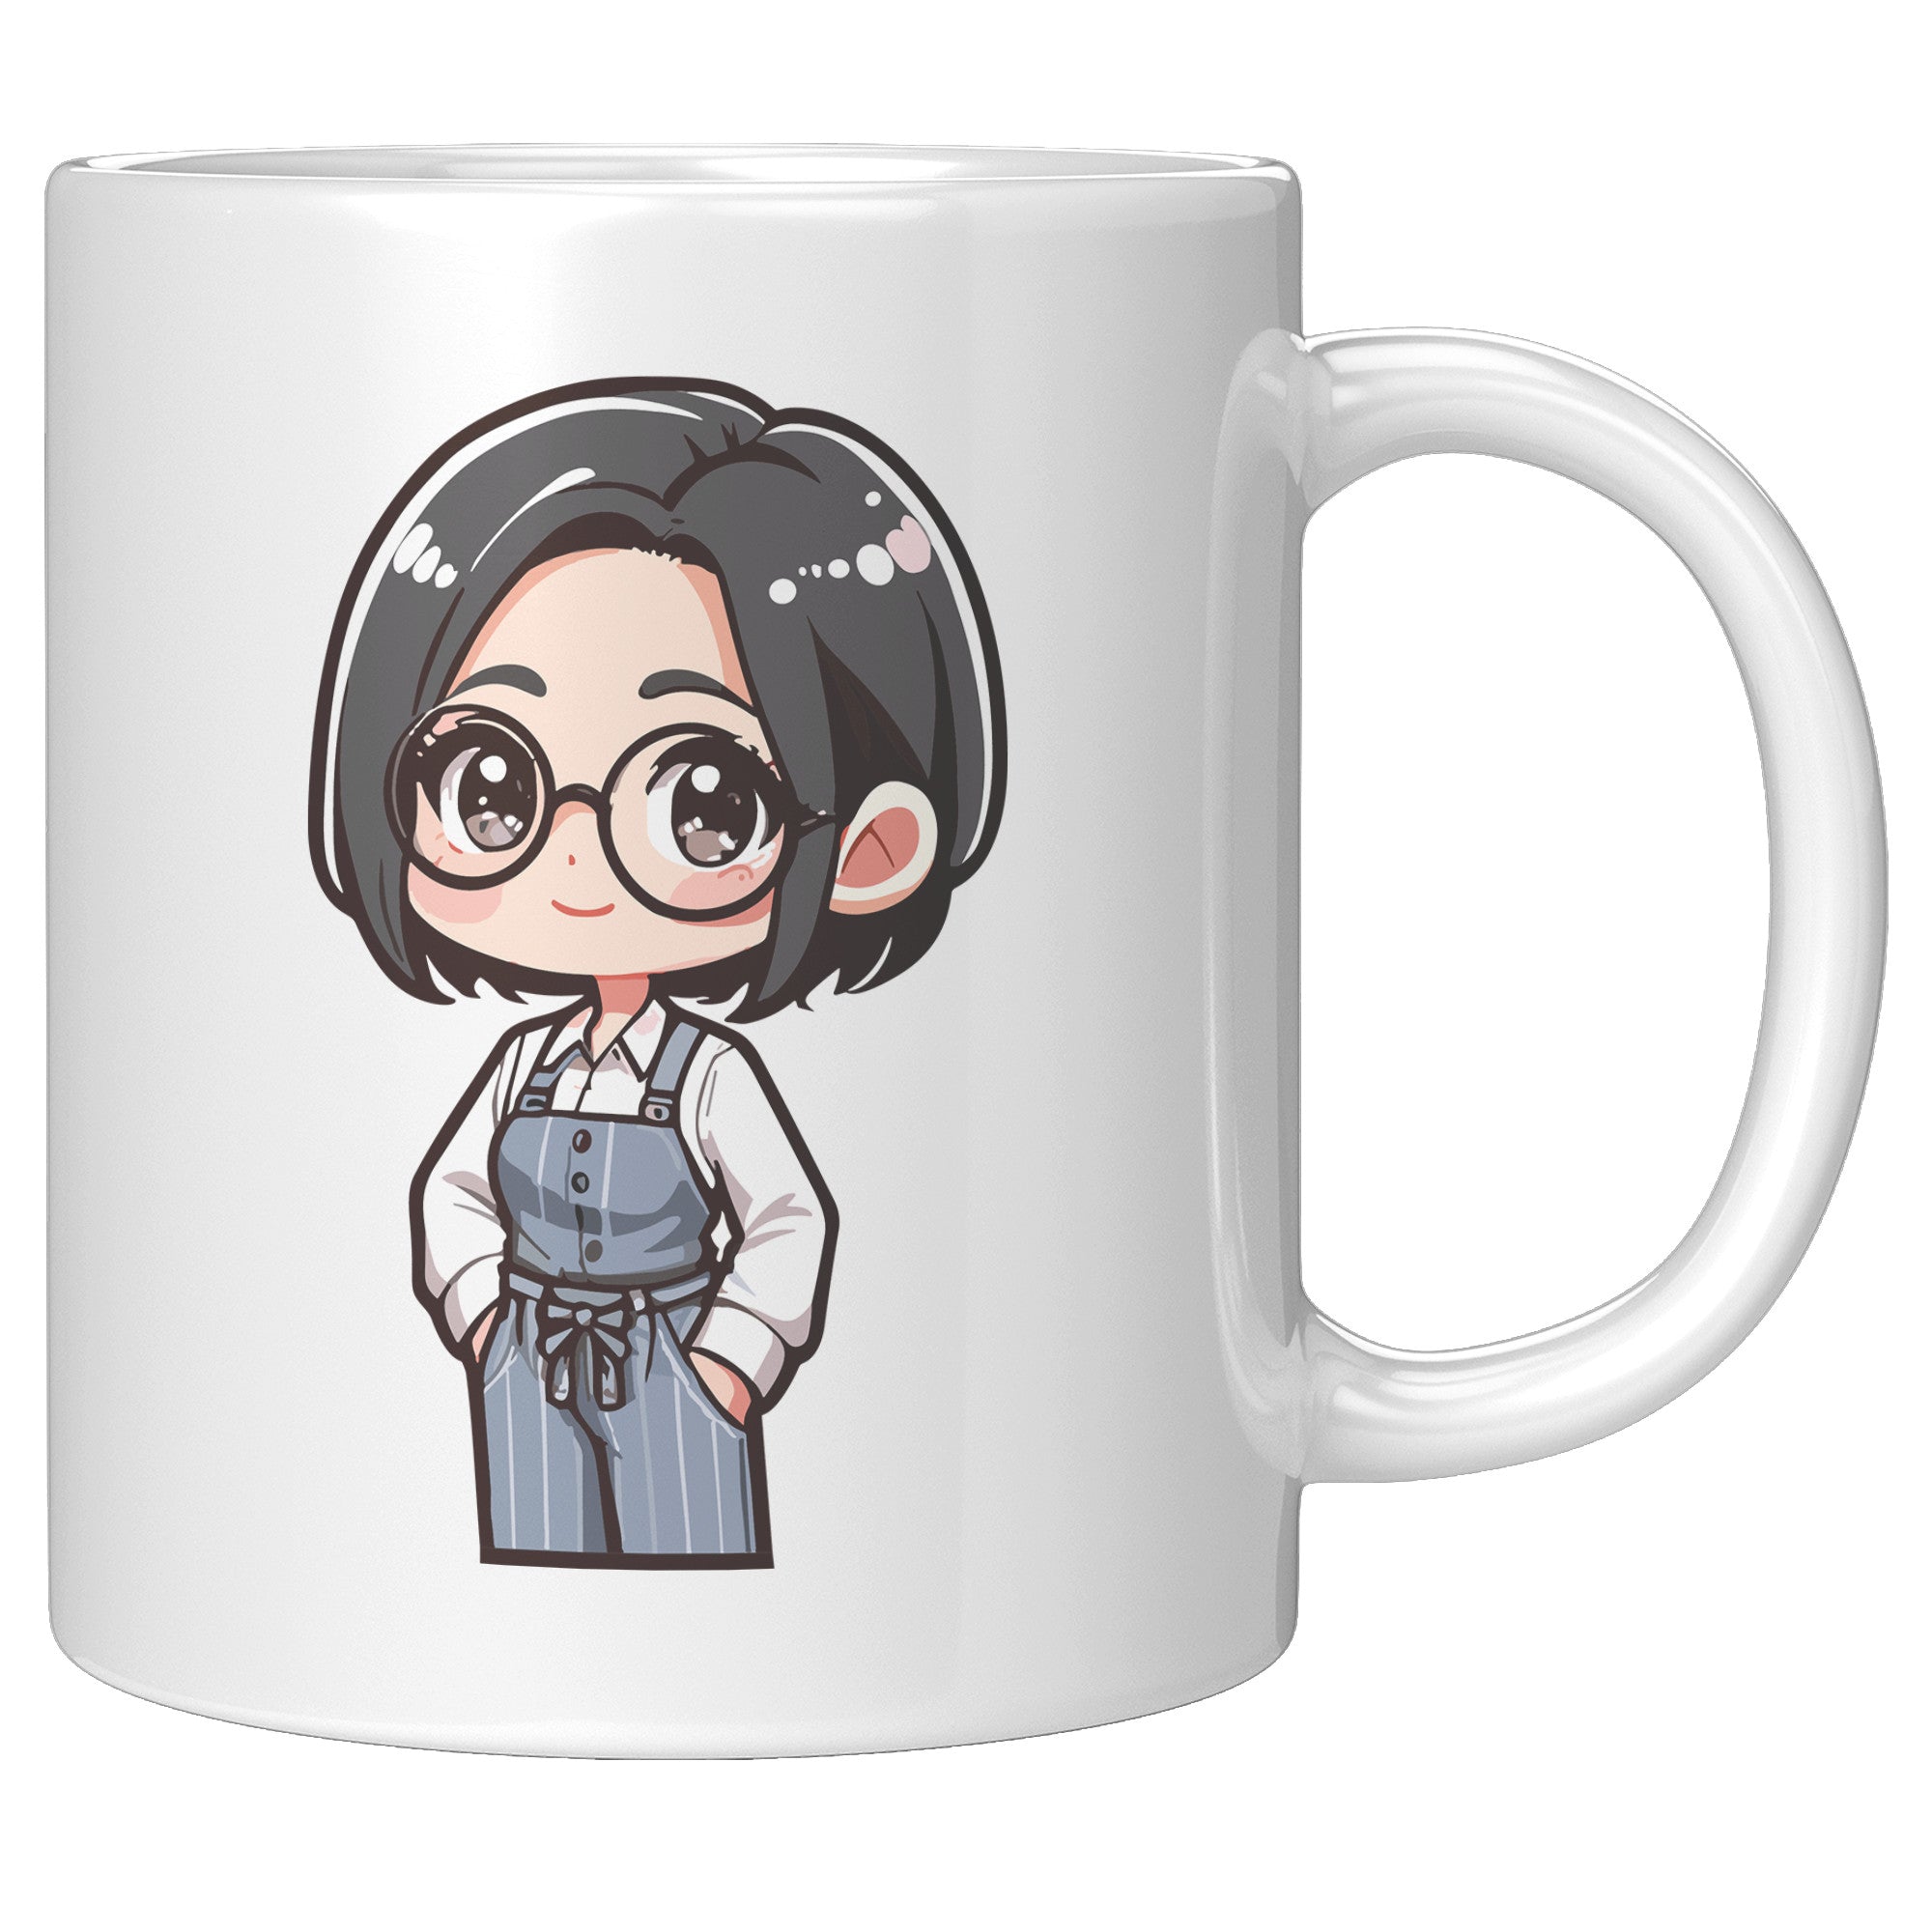 "Marites Gossip Queen Coffee Mug - Cute Cartoon 'Ano Ang Latest?' Cup - Perfect Chismosa Gift - Filipino Slang Tea Mug" - G